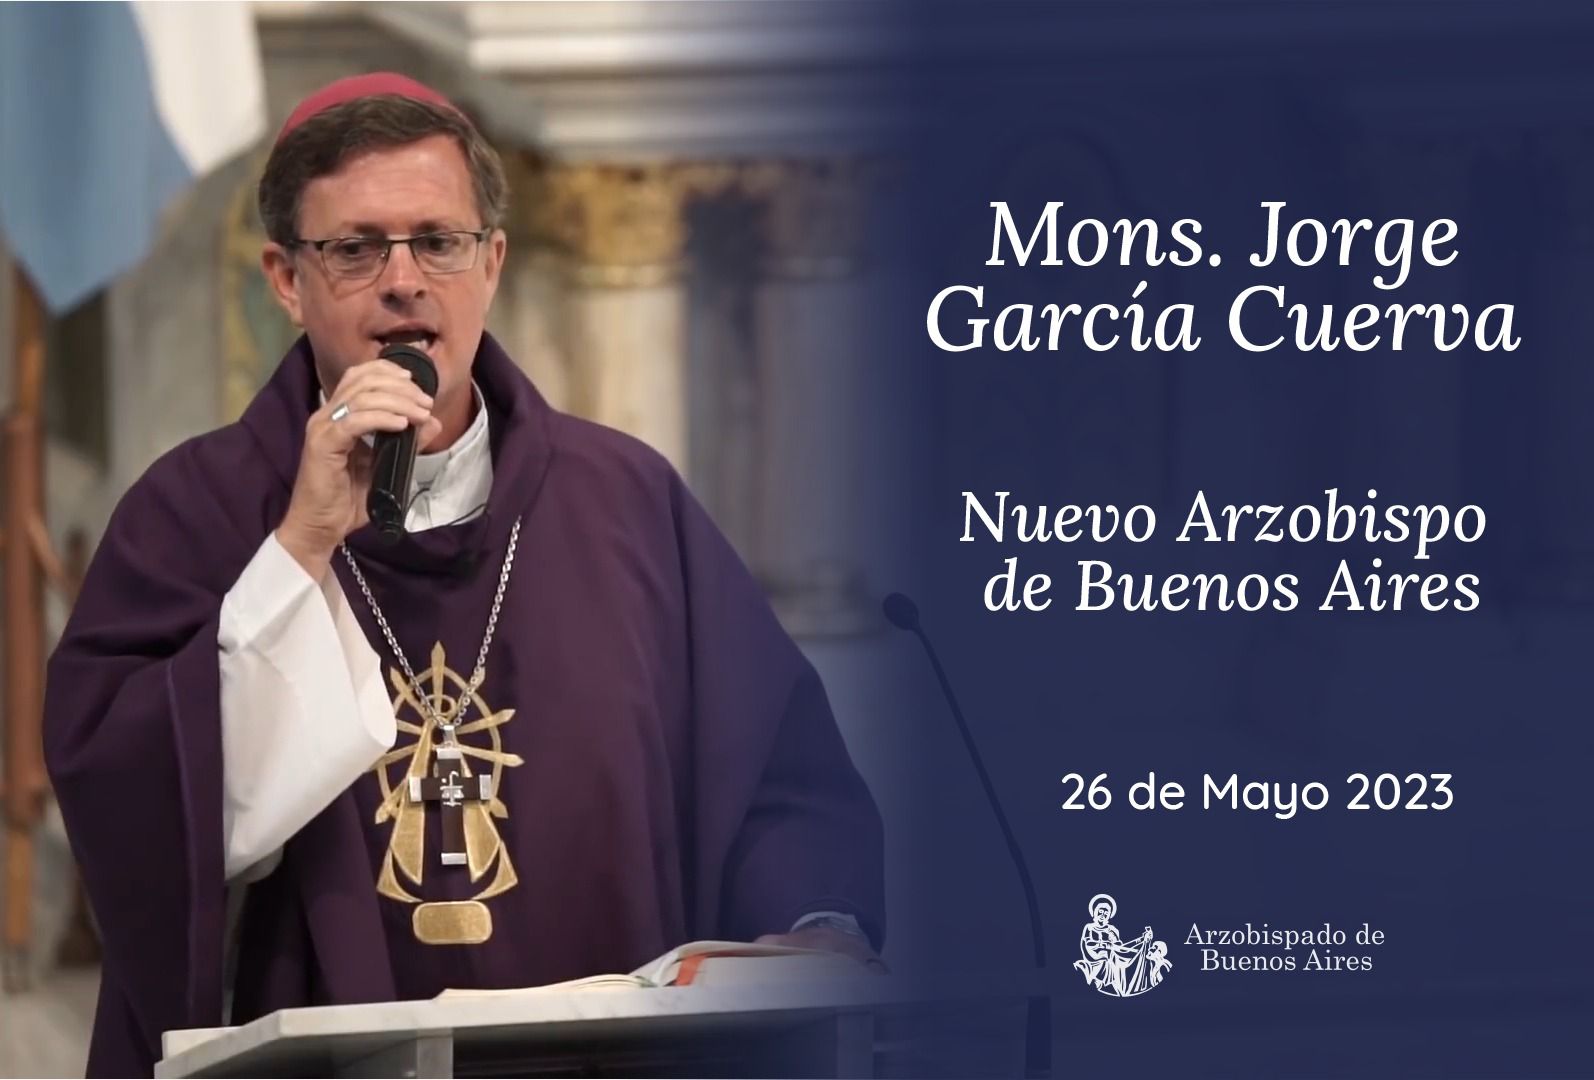 Nuevo Arzobispo de Buenos Aires